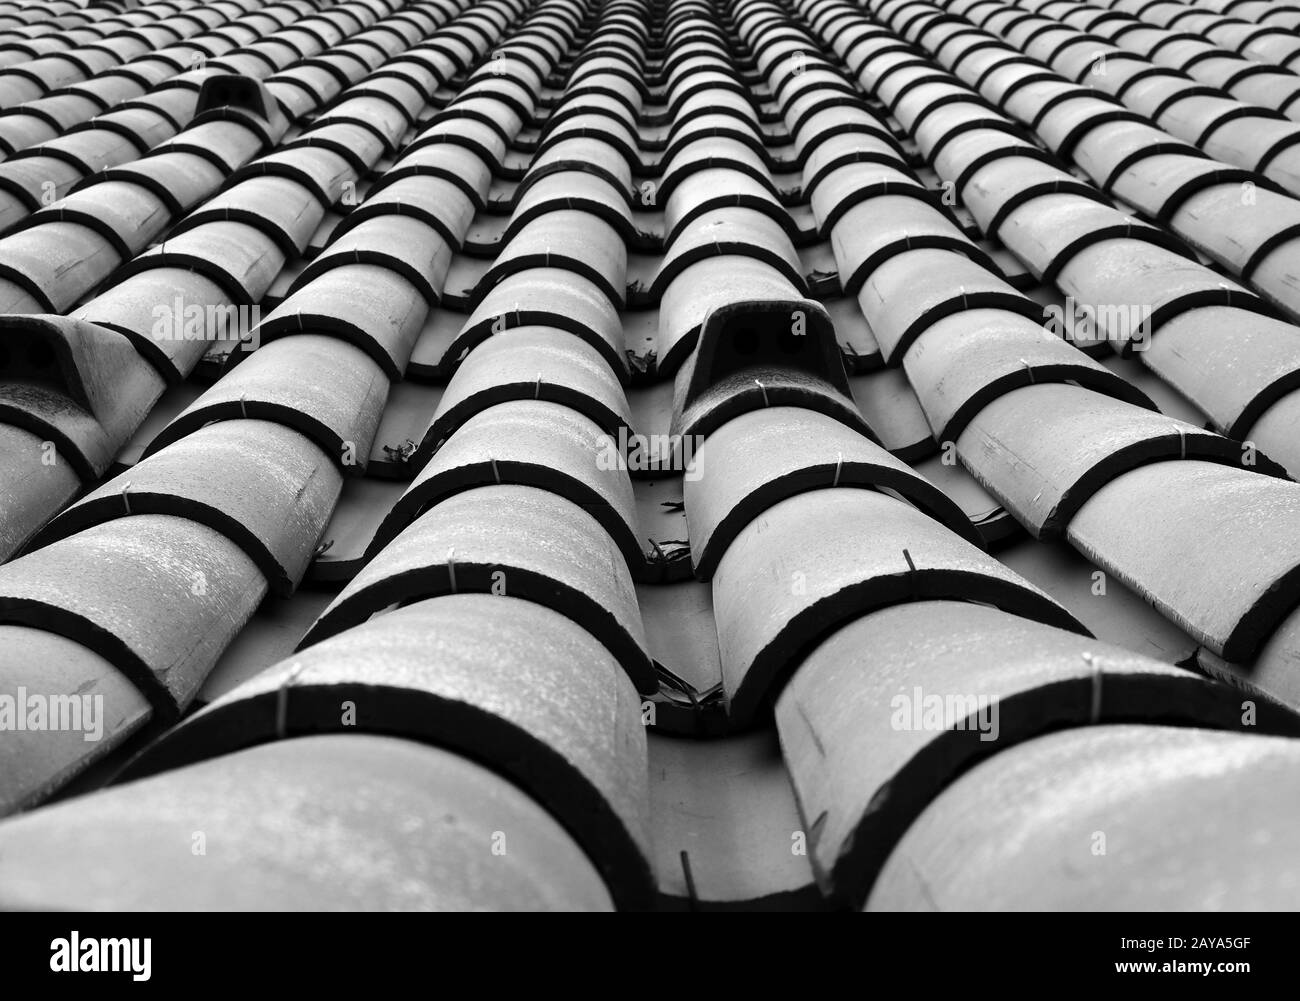 vue en perspective de la réduction du plein format monochrome d'un vieux toit avec des tuiles incurvées en lignes Banque D'Images